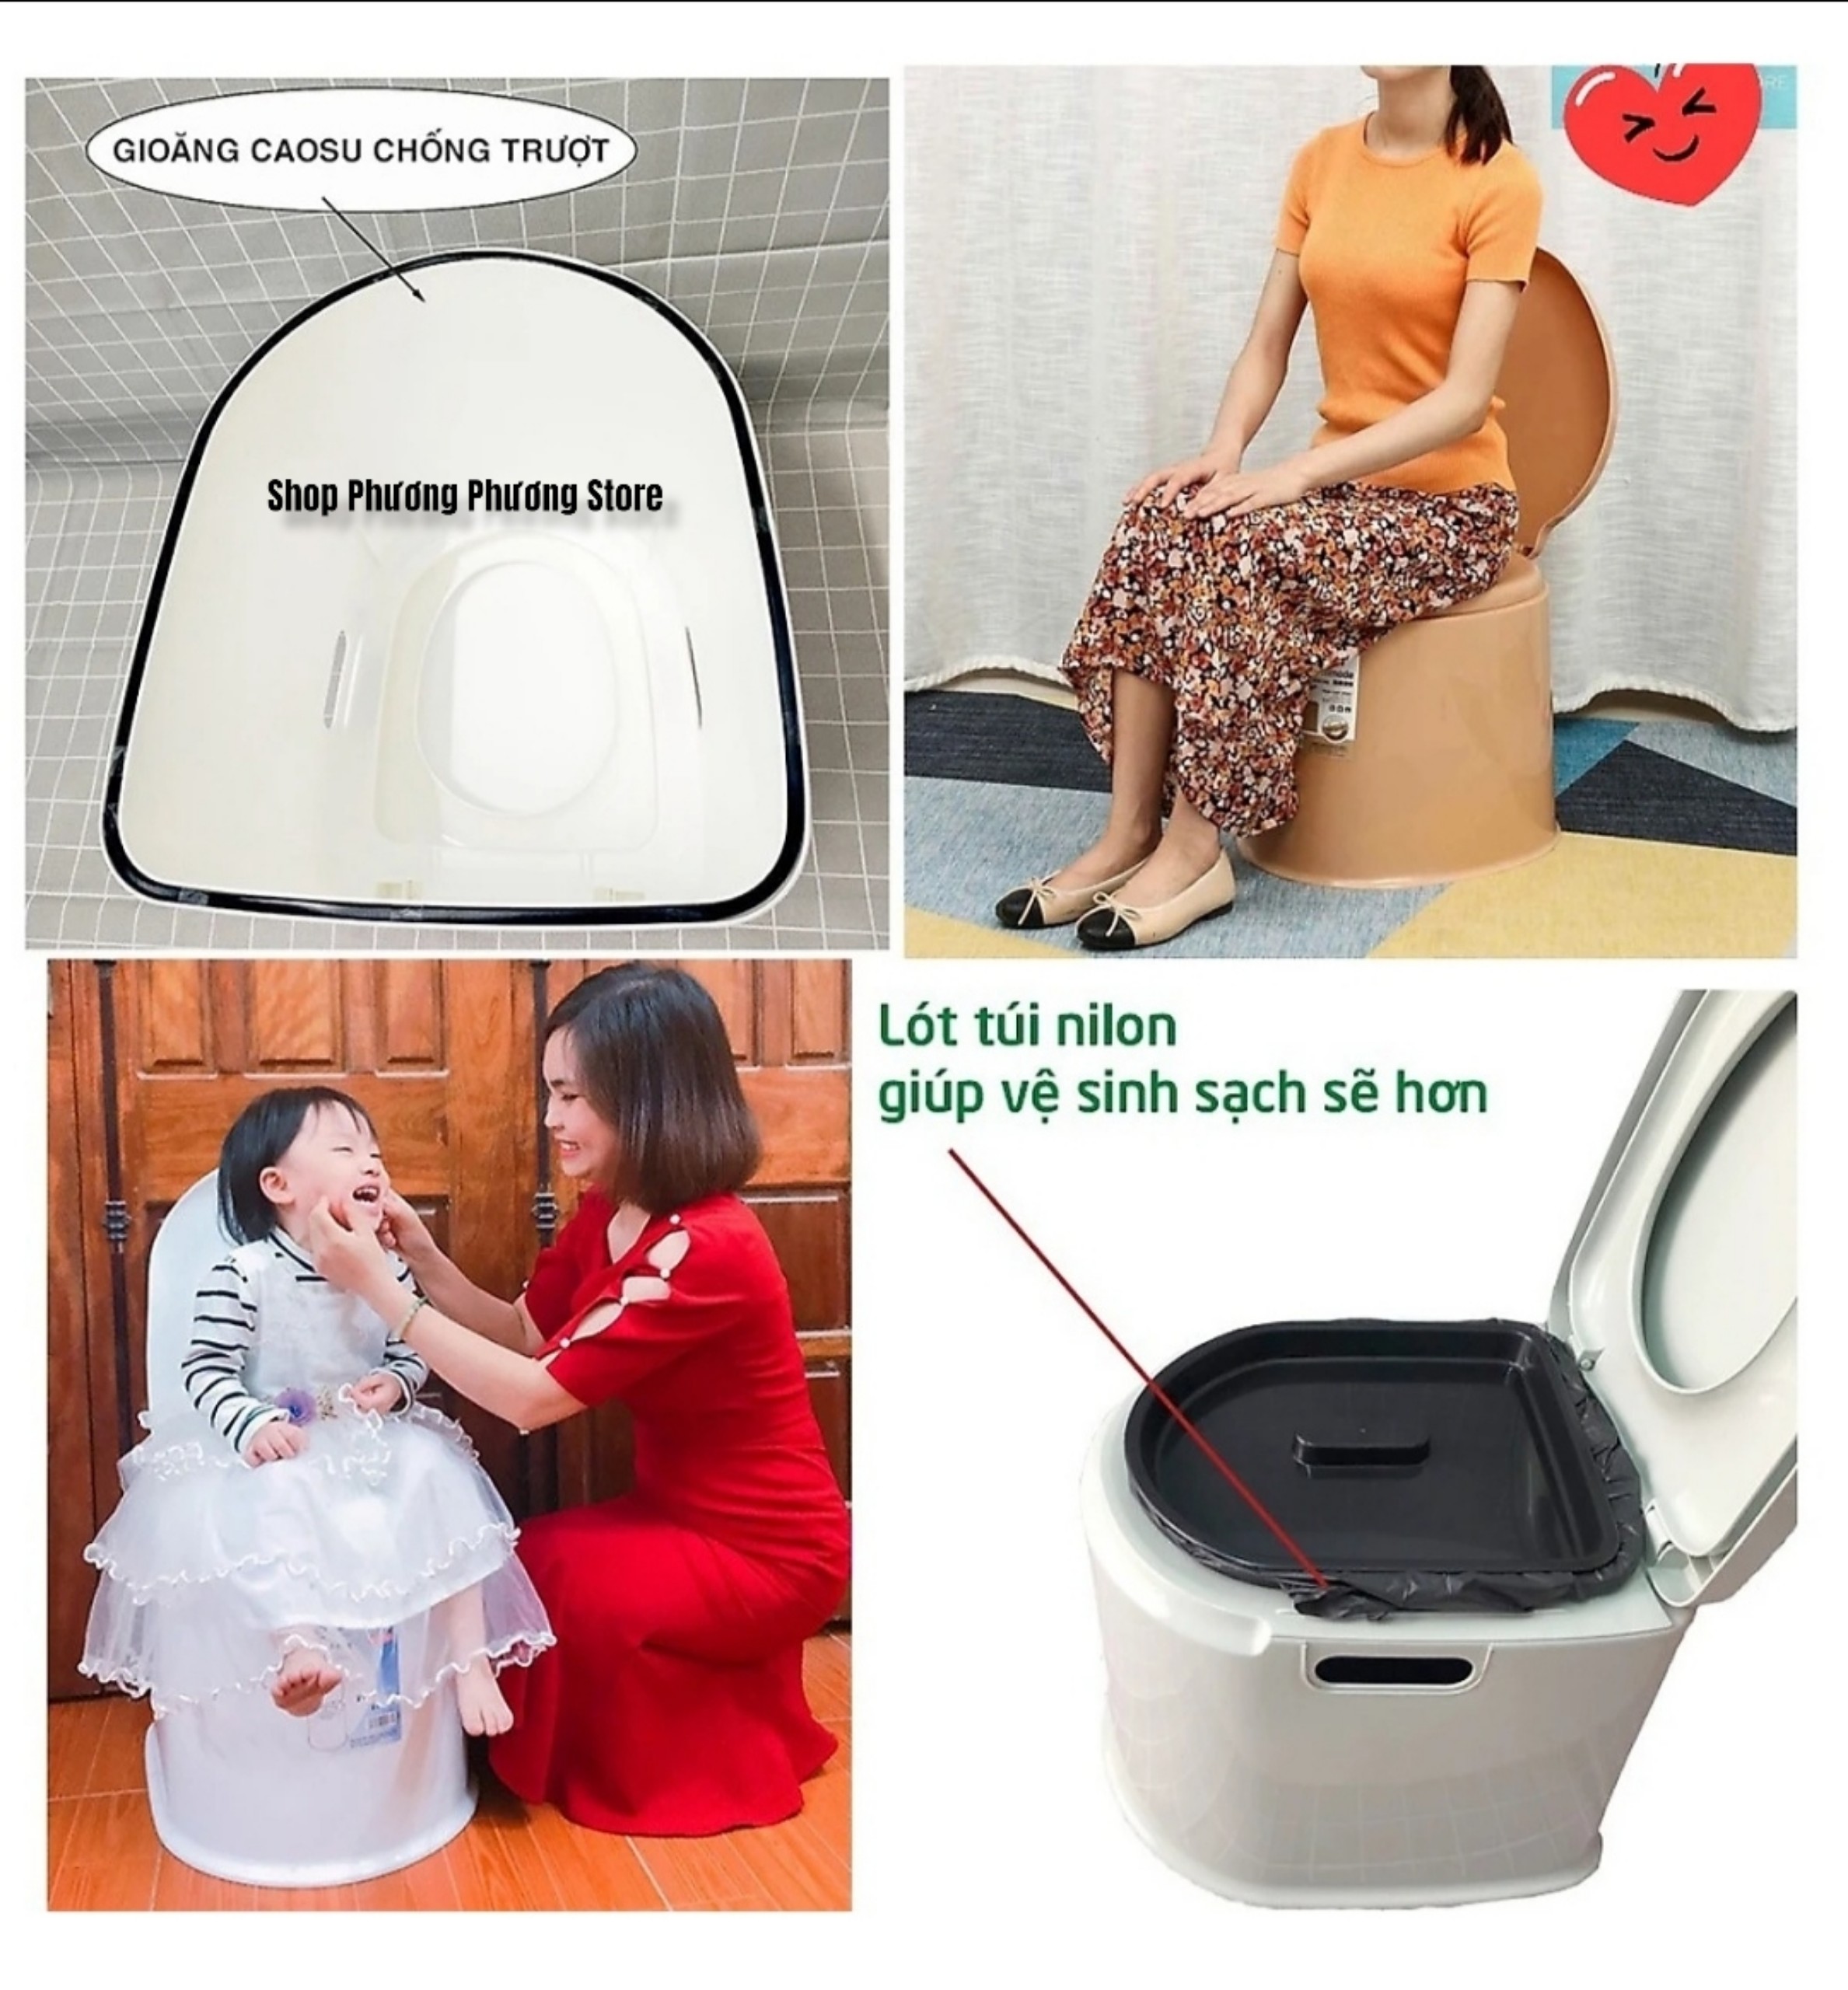 Bô vệ sinh đa năng - ghế bô vệ sinh cho người già